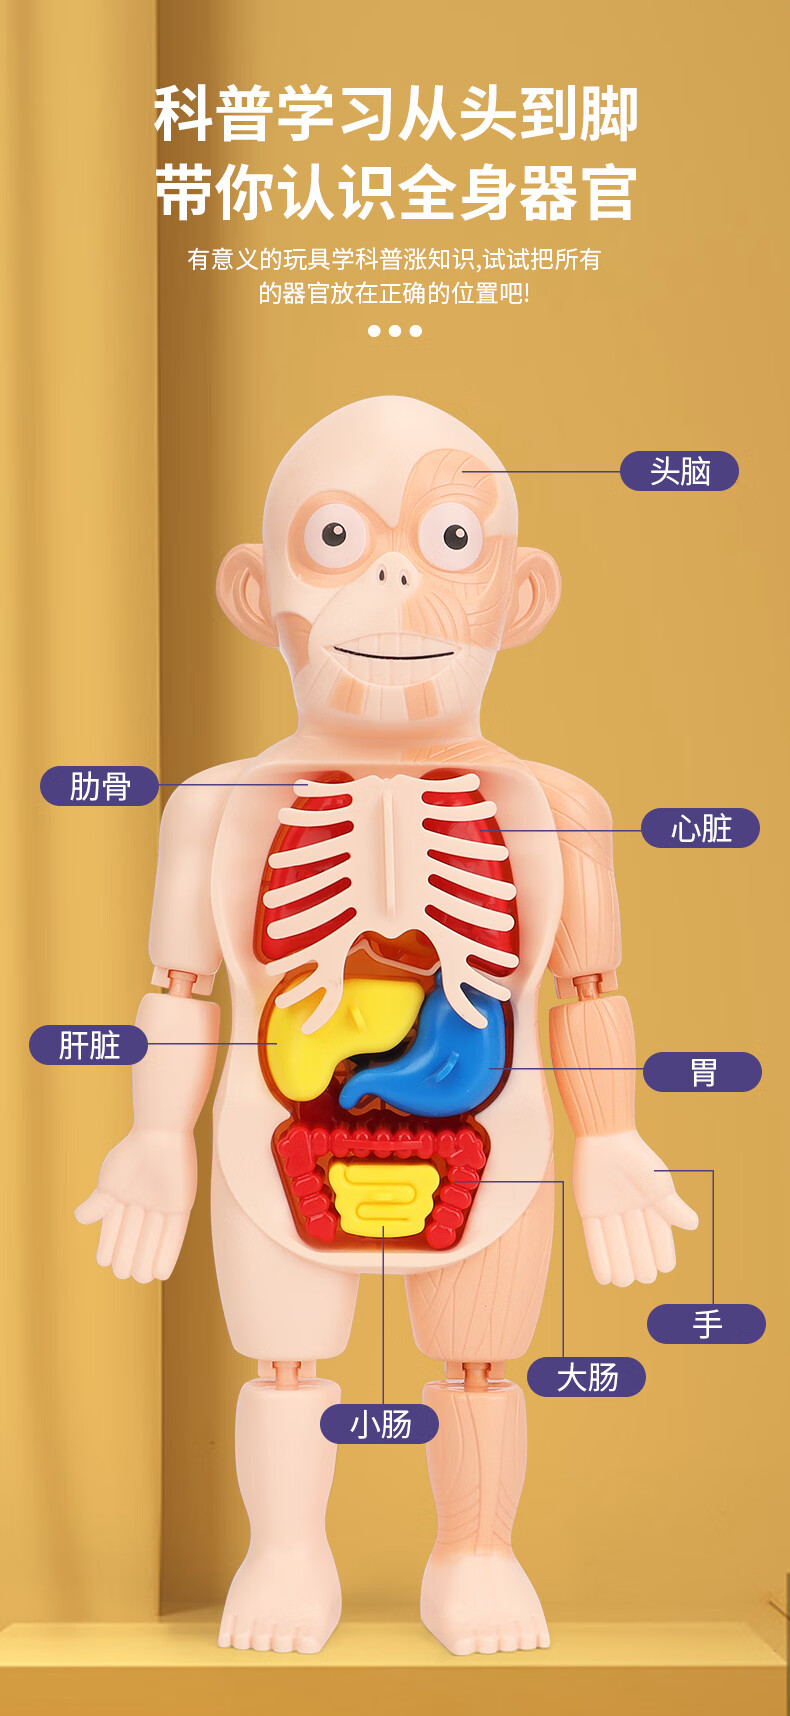 人体骨骼模型儿童人体可拆卸医学解剖模型身体内脏器官身体骨骼架结构